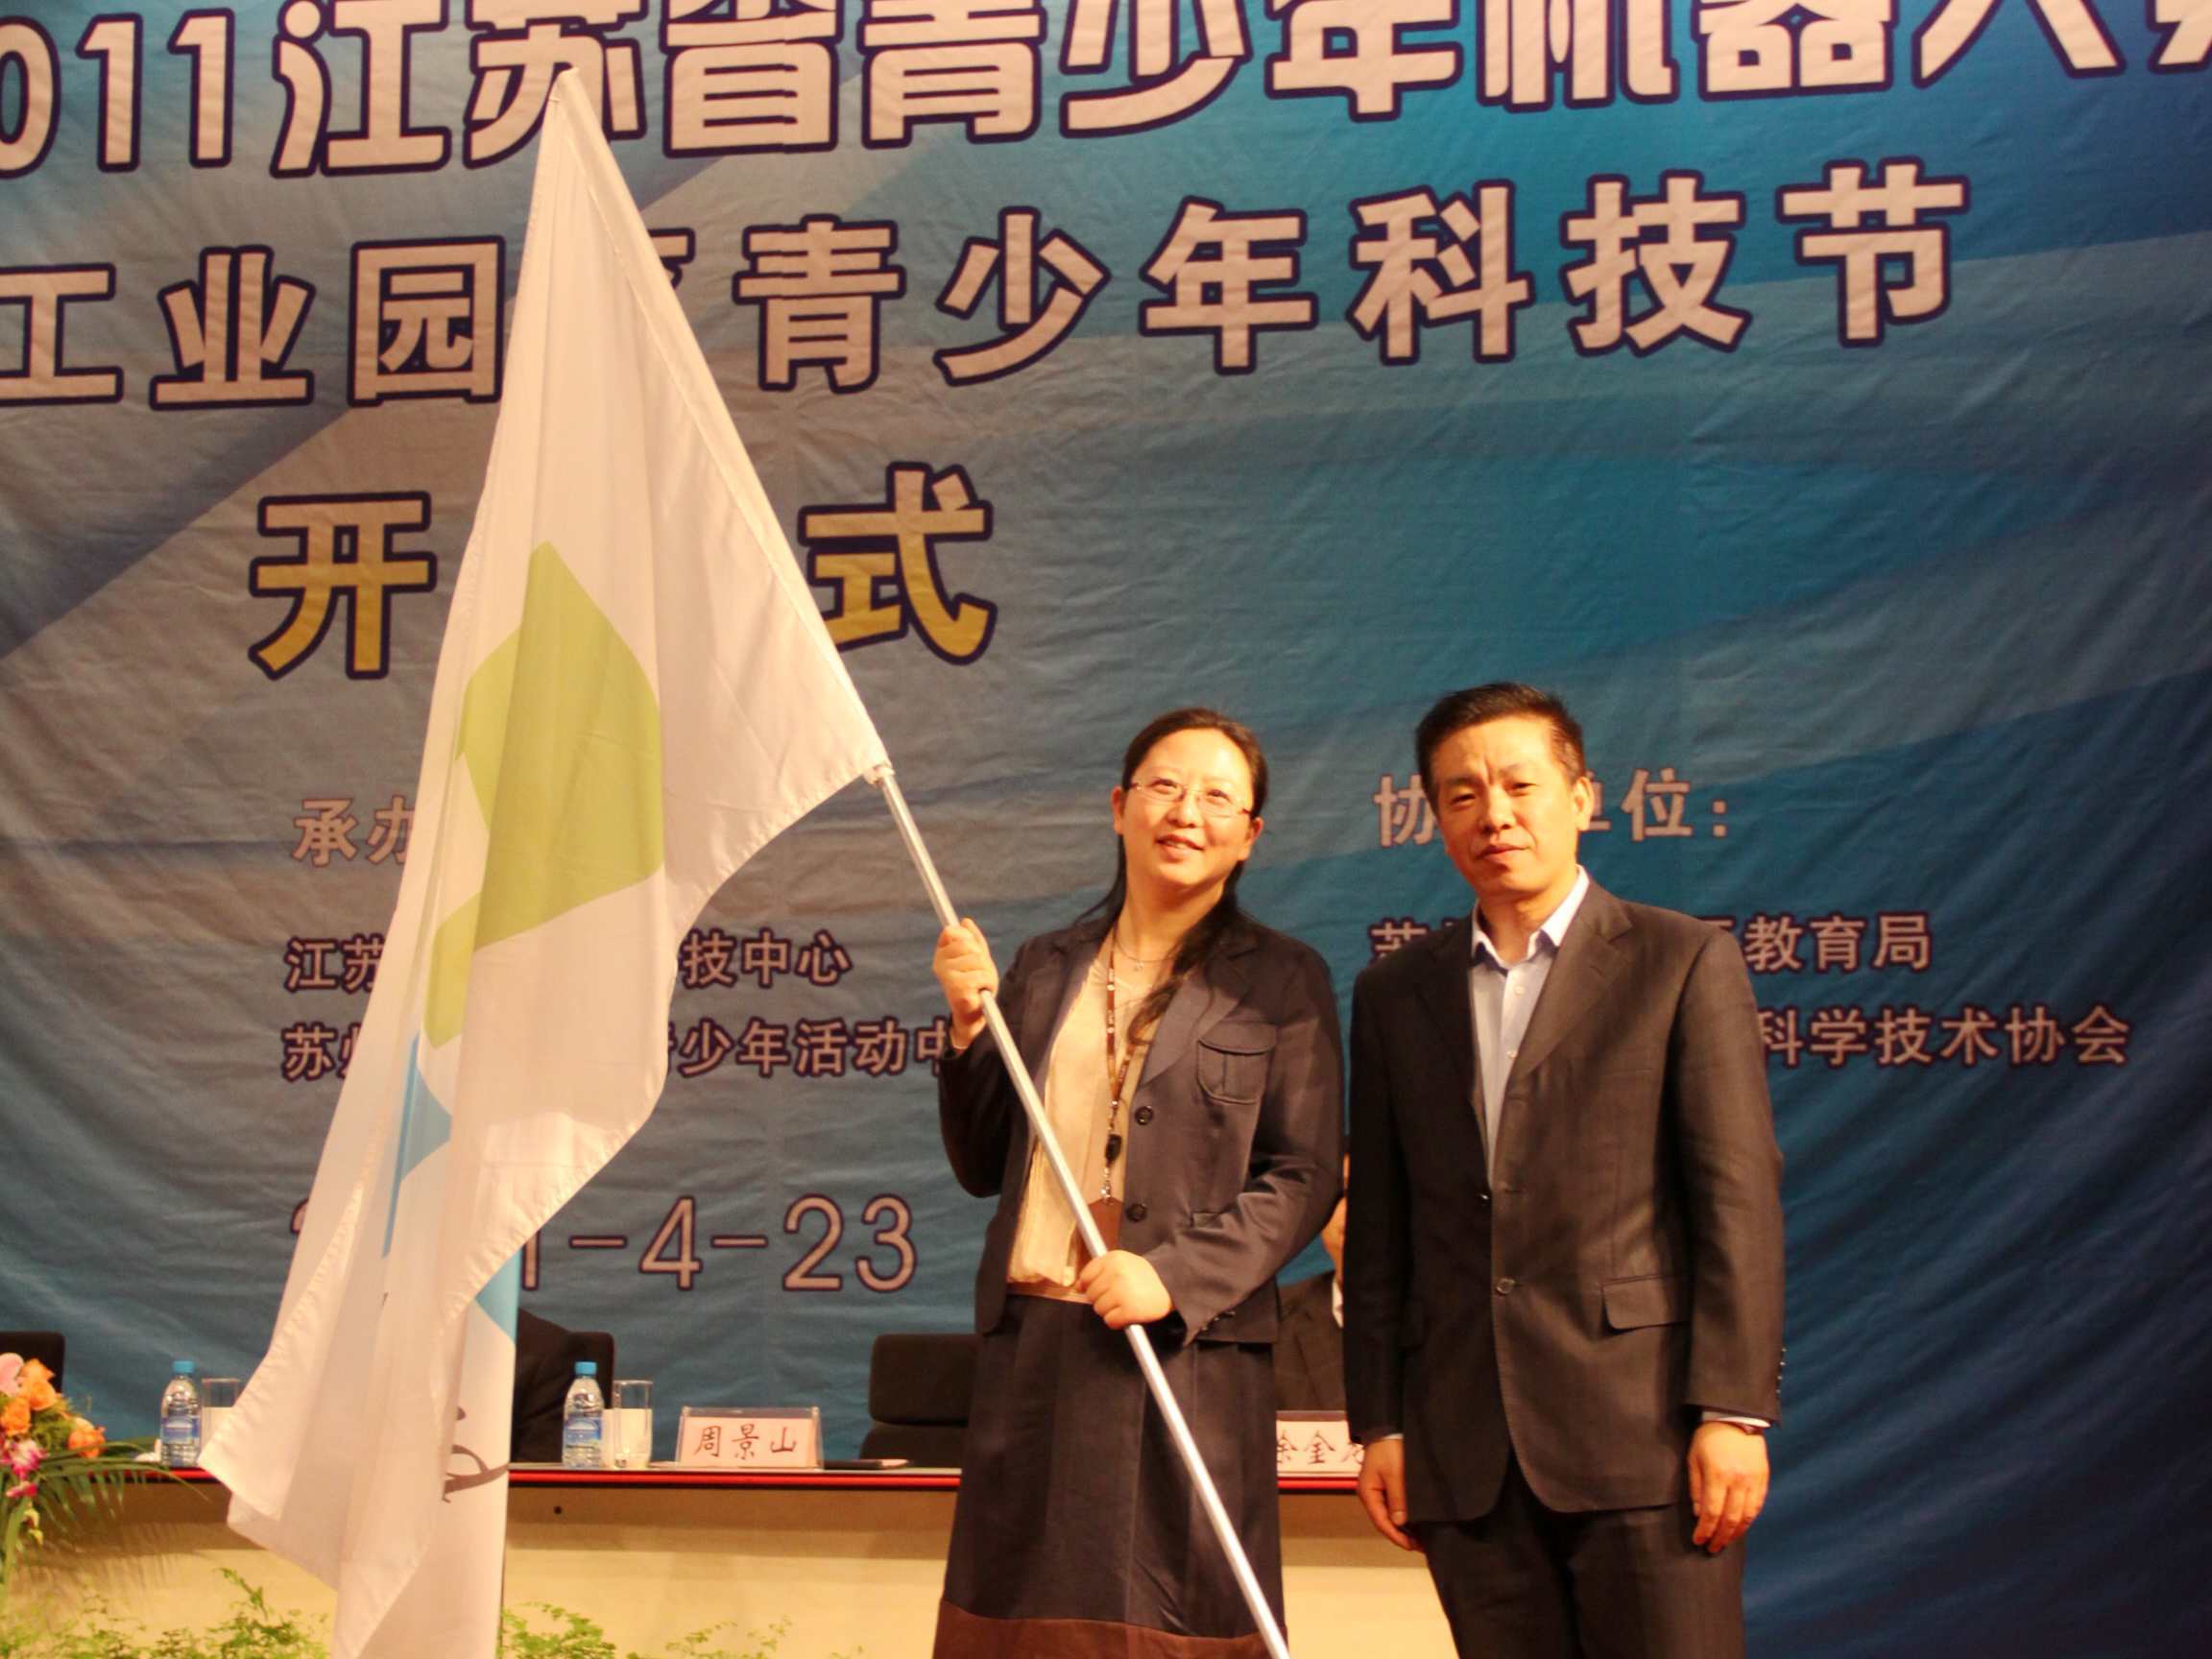 江苏省青少年科技中心主任周景山向承办单位授予会旗